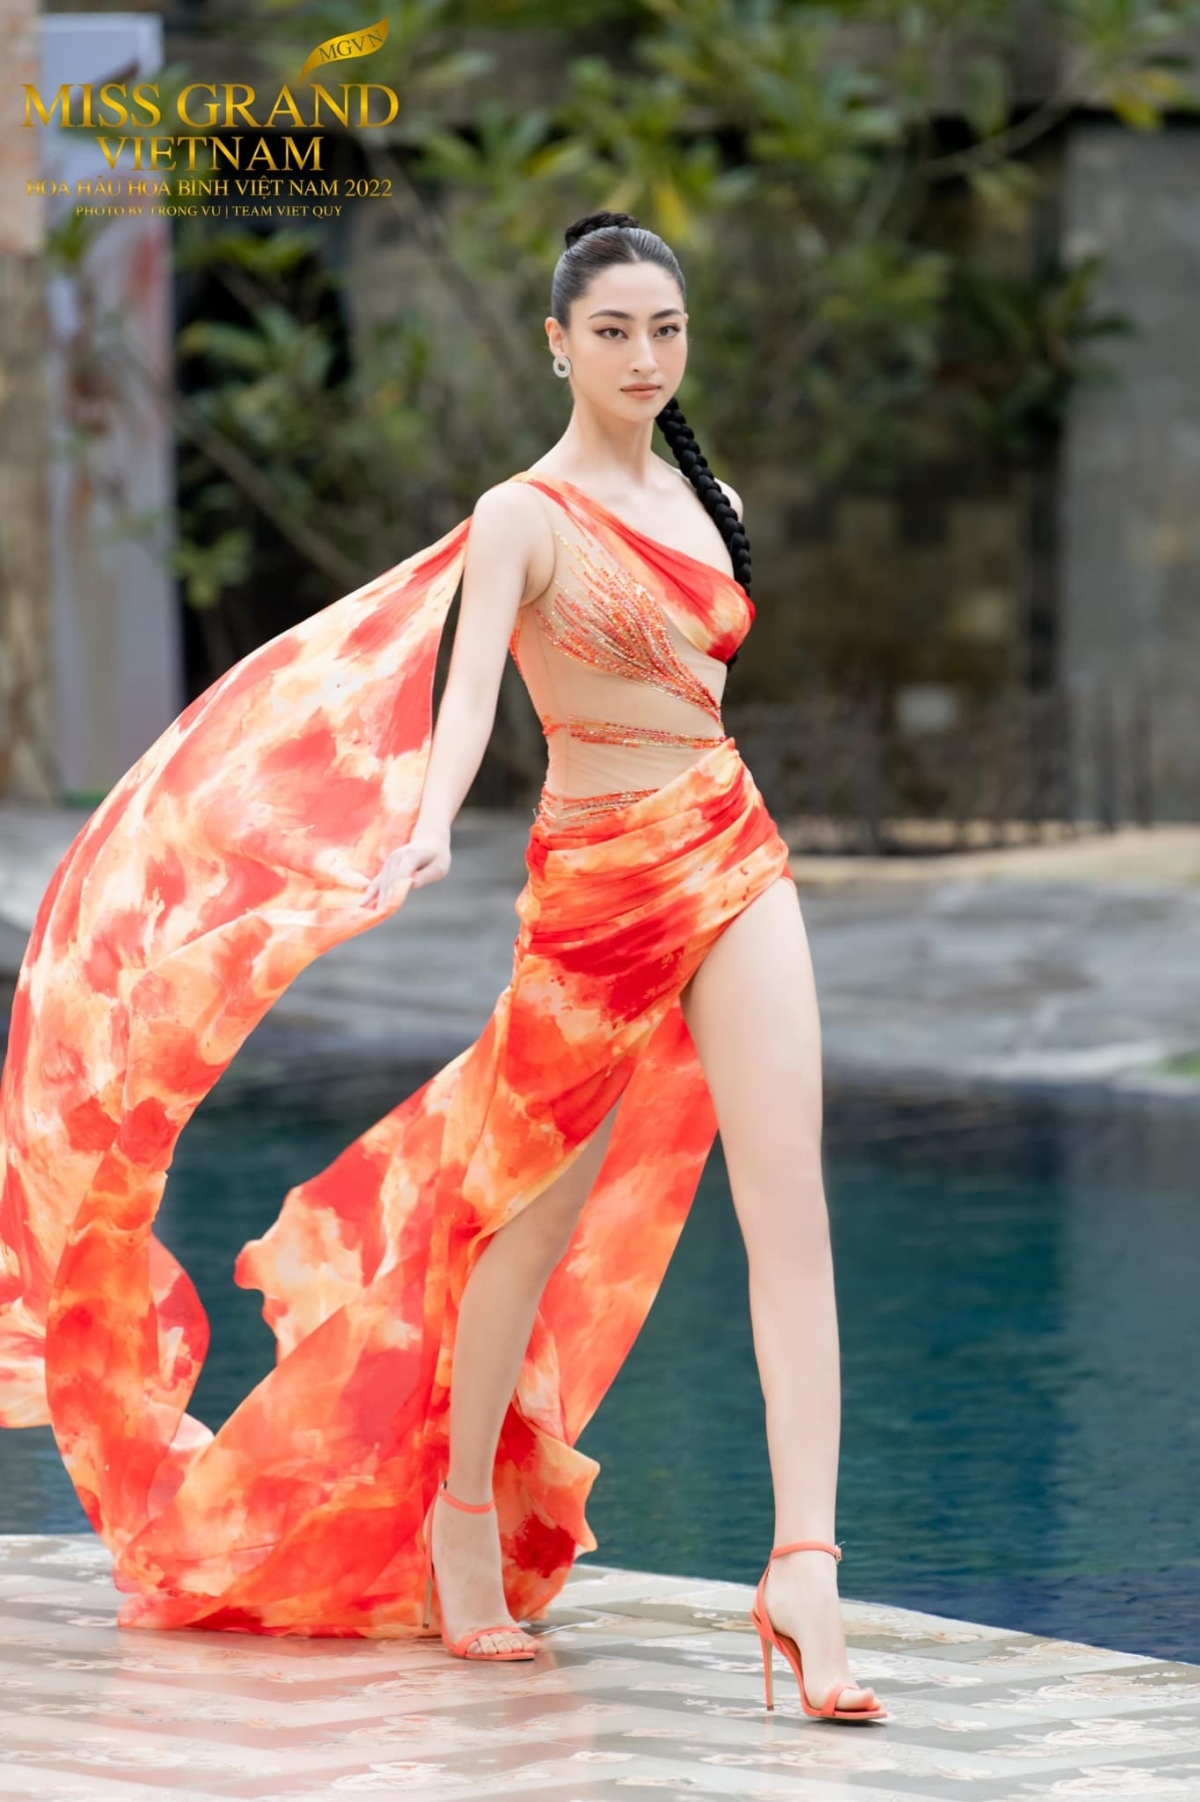 Hoa hậu Lương Thùy Linh "lột xác" gợi cảm, khoe body nuột nà trong bộ ảnh mới-7